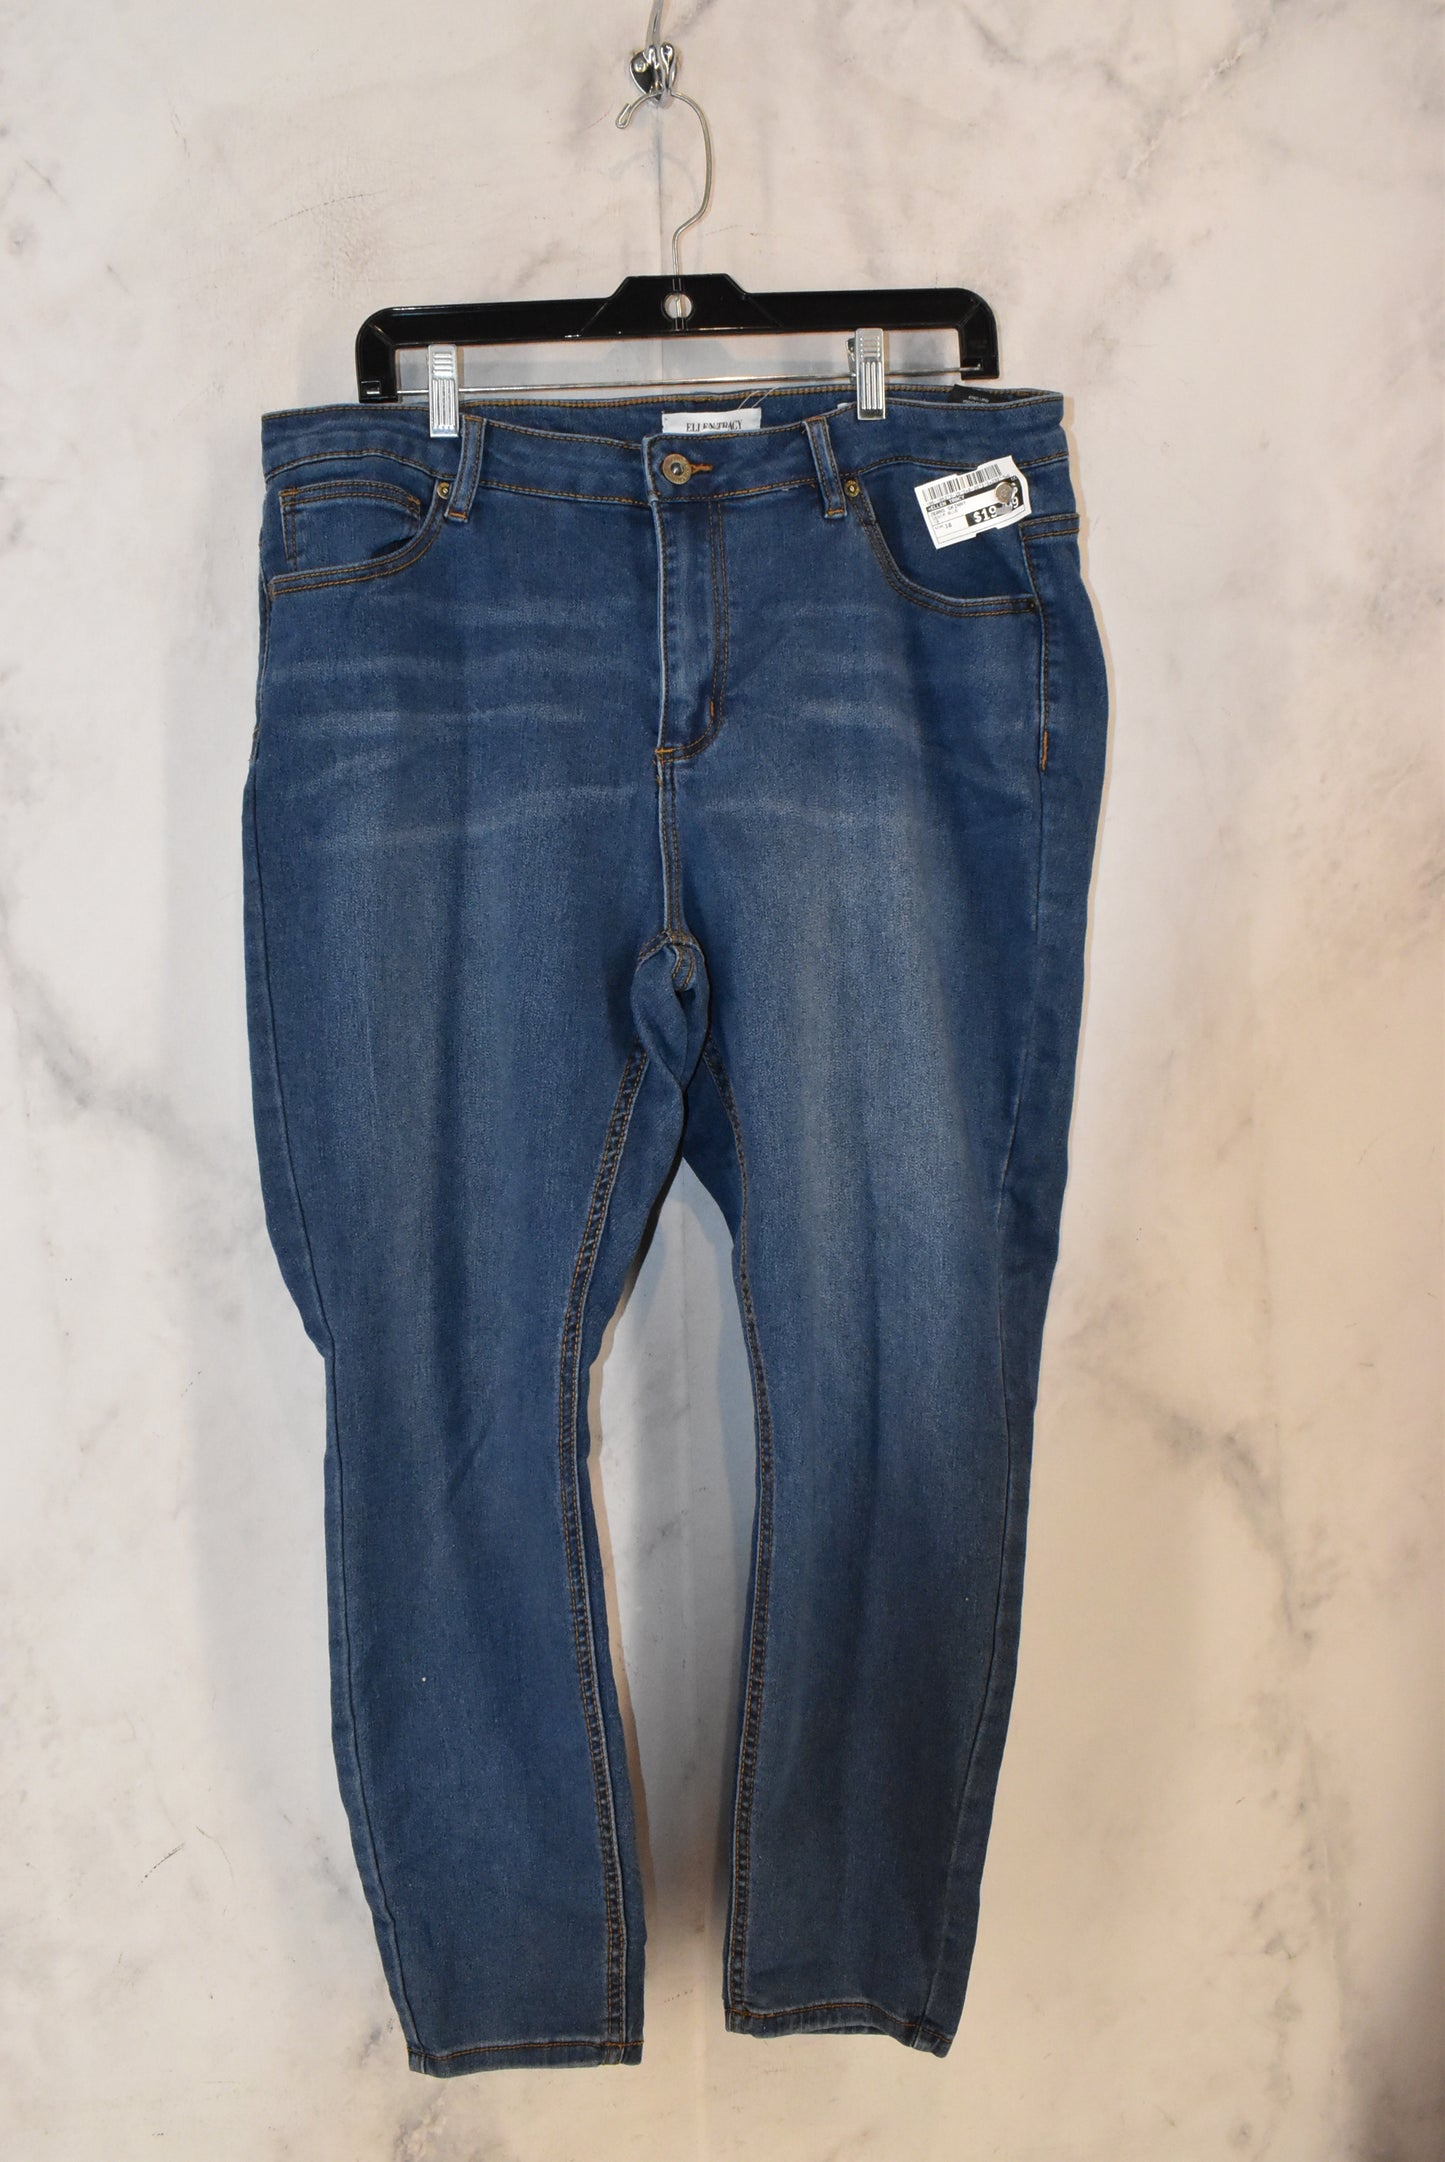 Jeans Skinny By Ellen Tracy  Size: 18